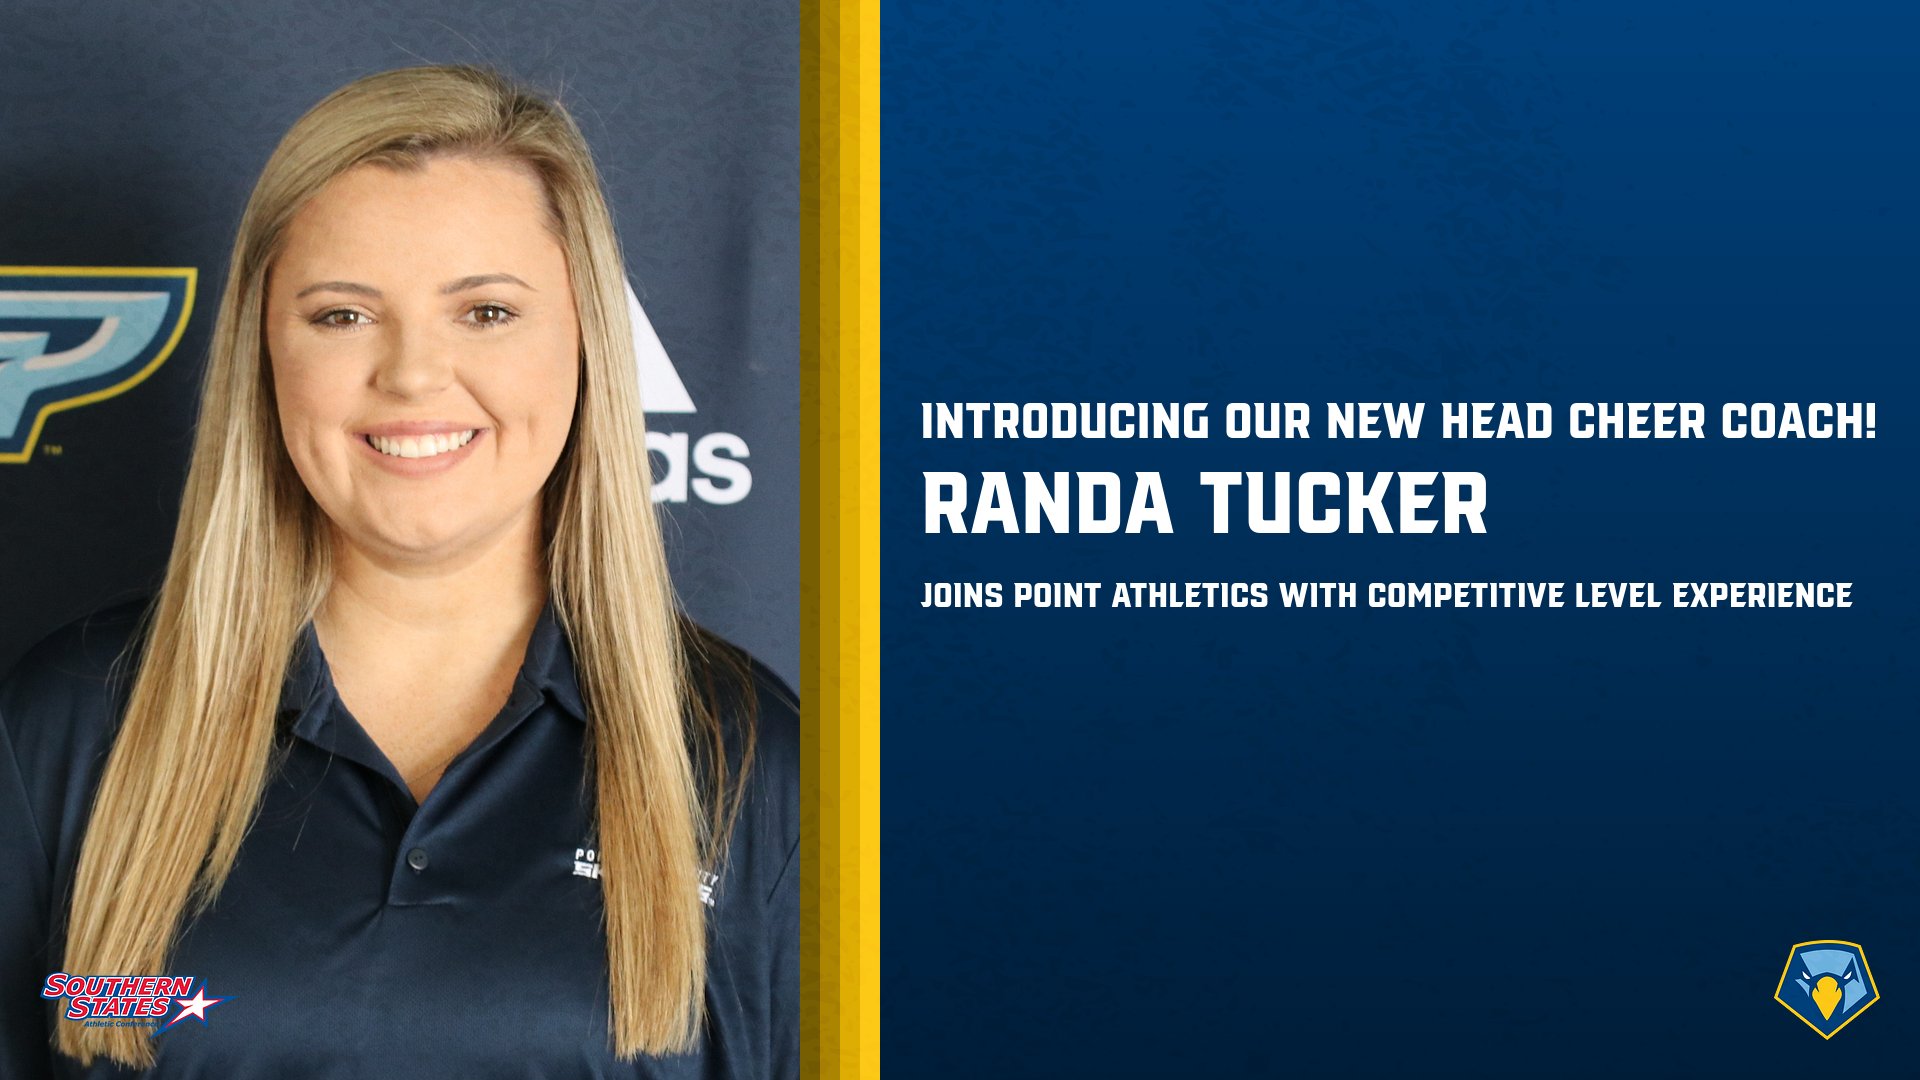 Randa Tucker named as the new Head Cheer Coach at Point University